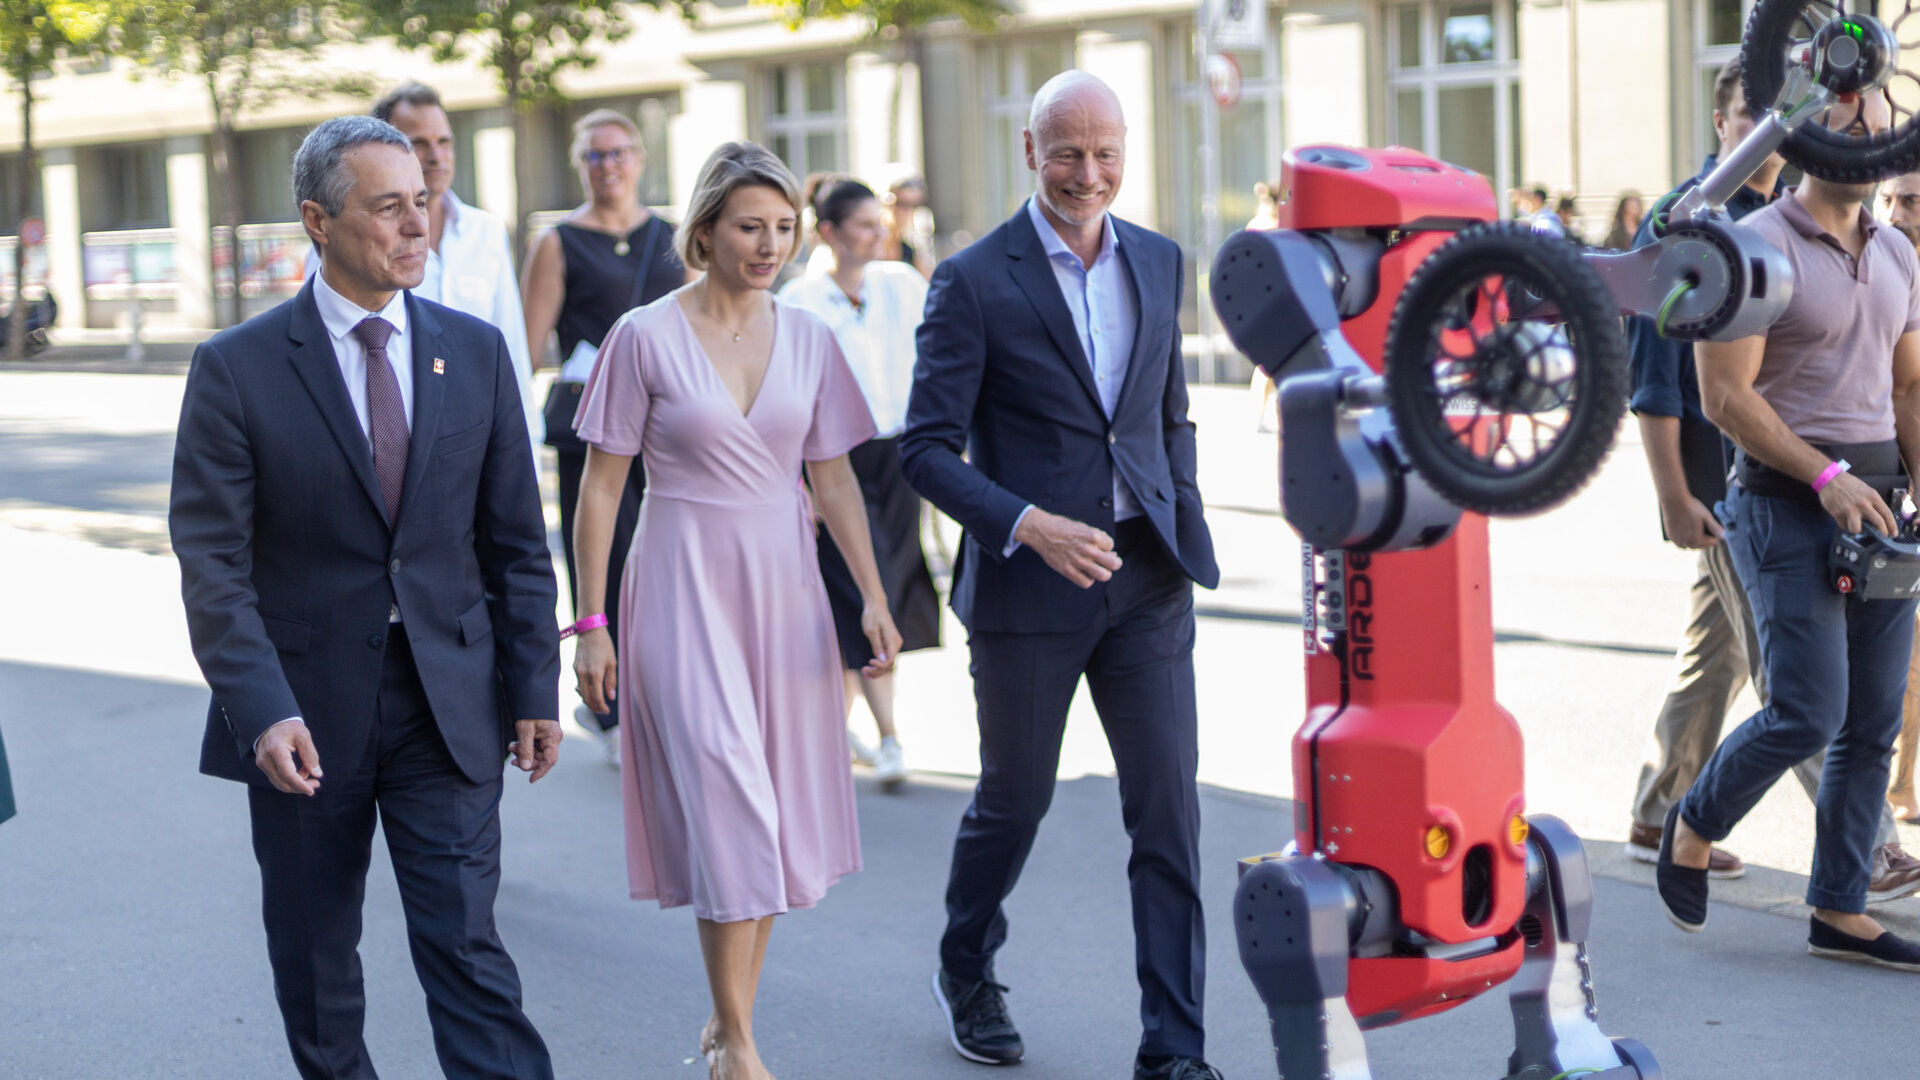 Le 'Giornate Digitali Svizzere' 2022 sono state inaugurate a Berna il 5 settembre